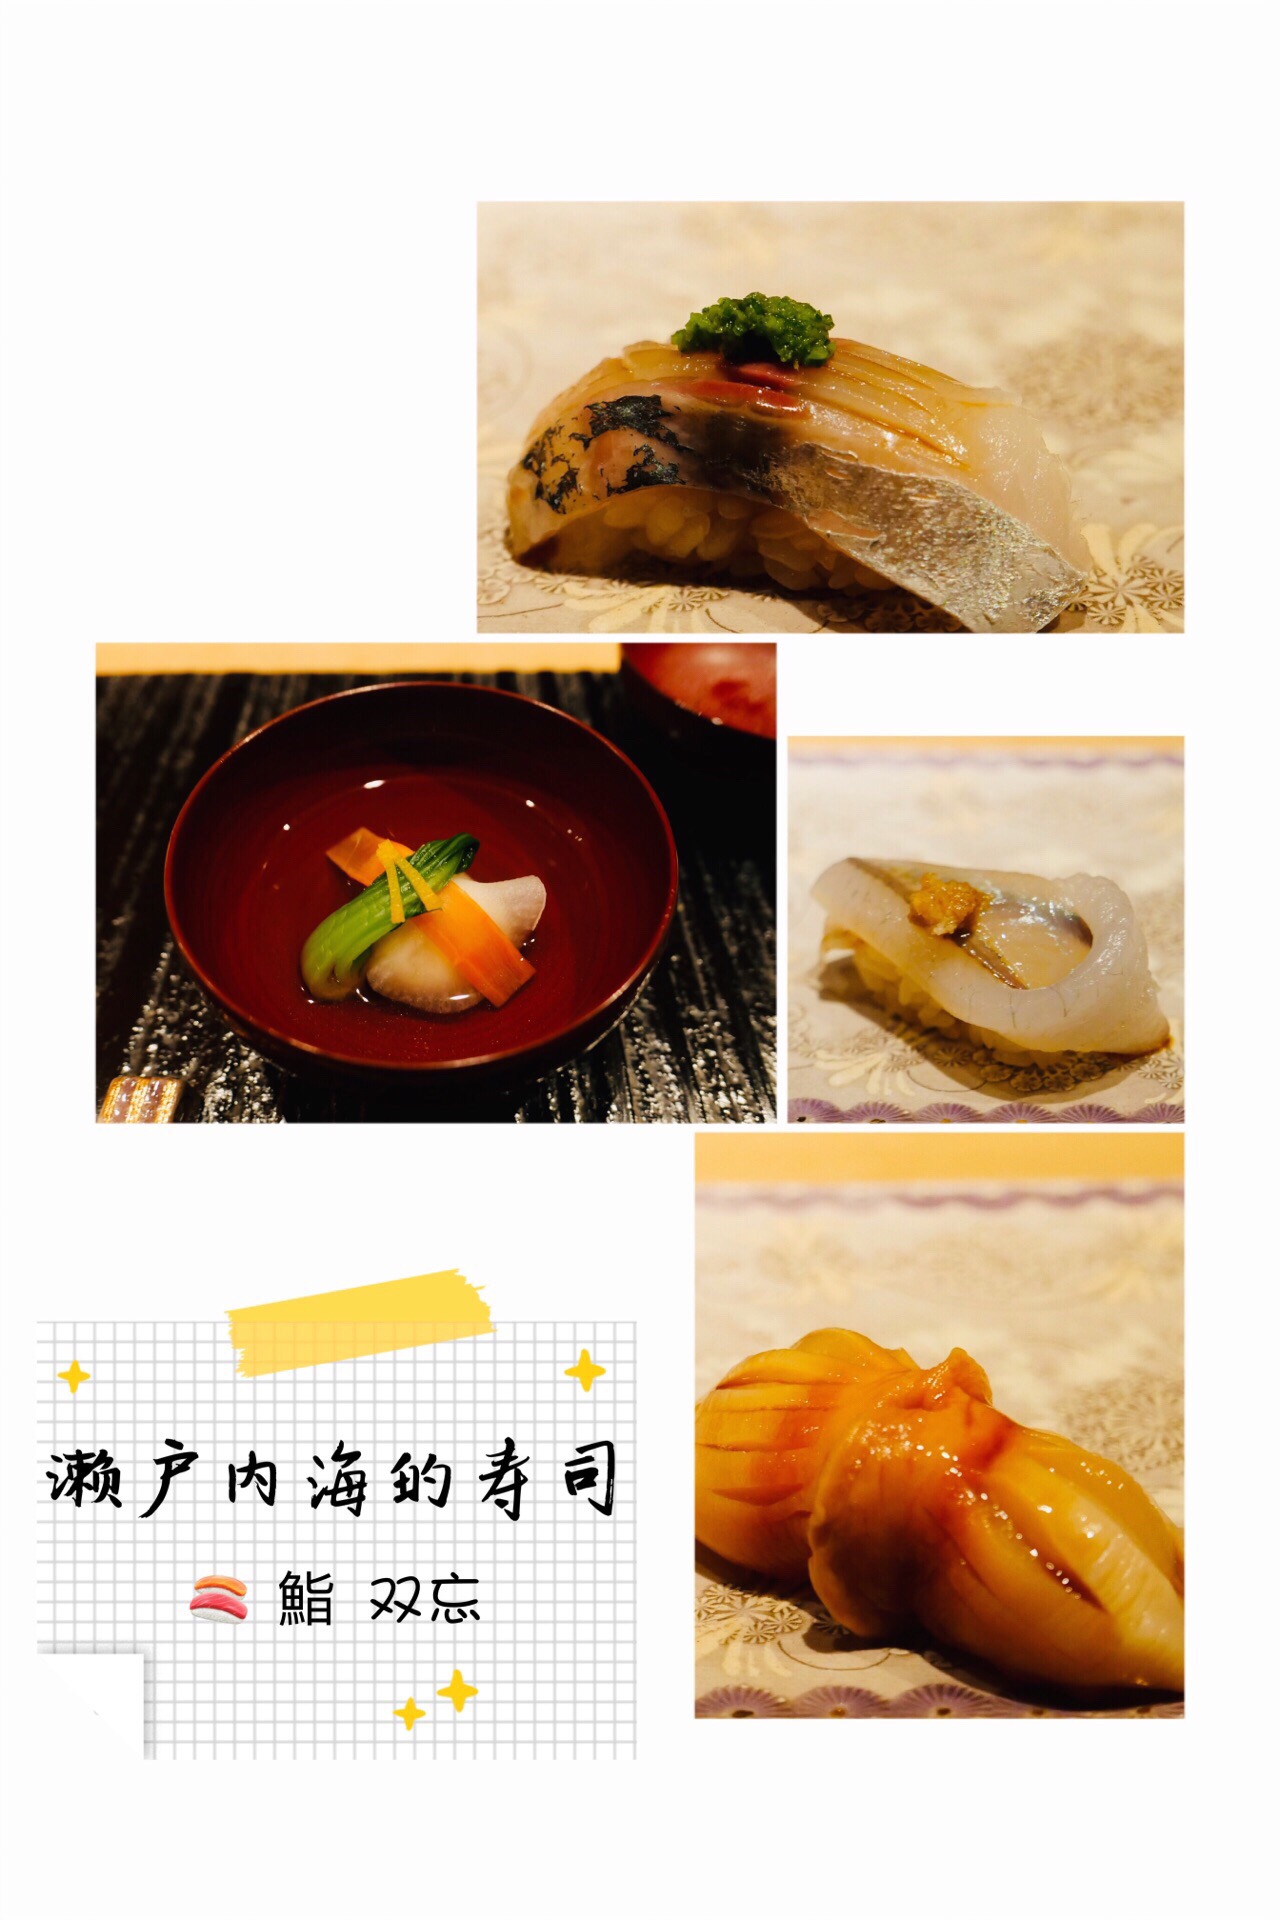 濑户内海的寿司 鮨 双忘  💫在广岛县的BELLA VISTA住了两天，前一晚的西餐印象不错，第二晚